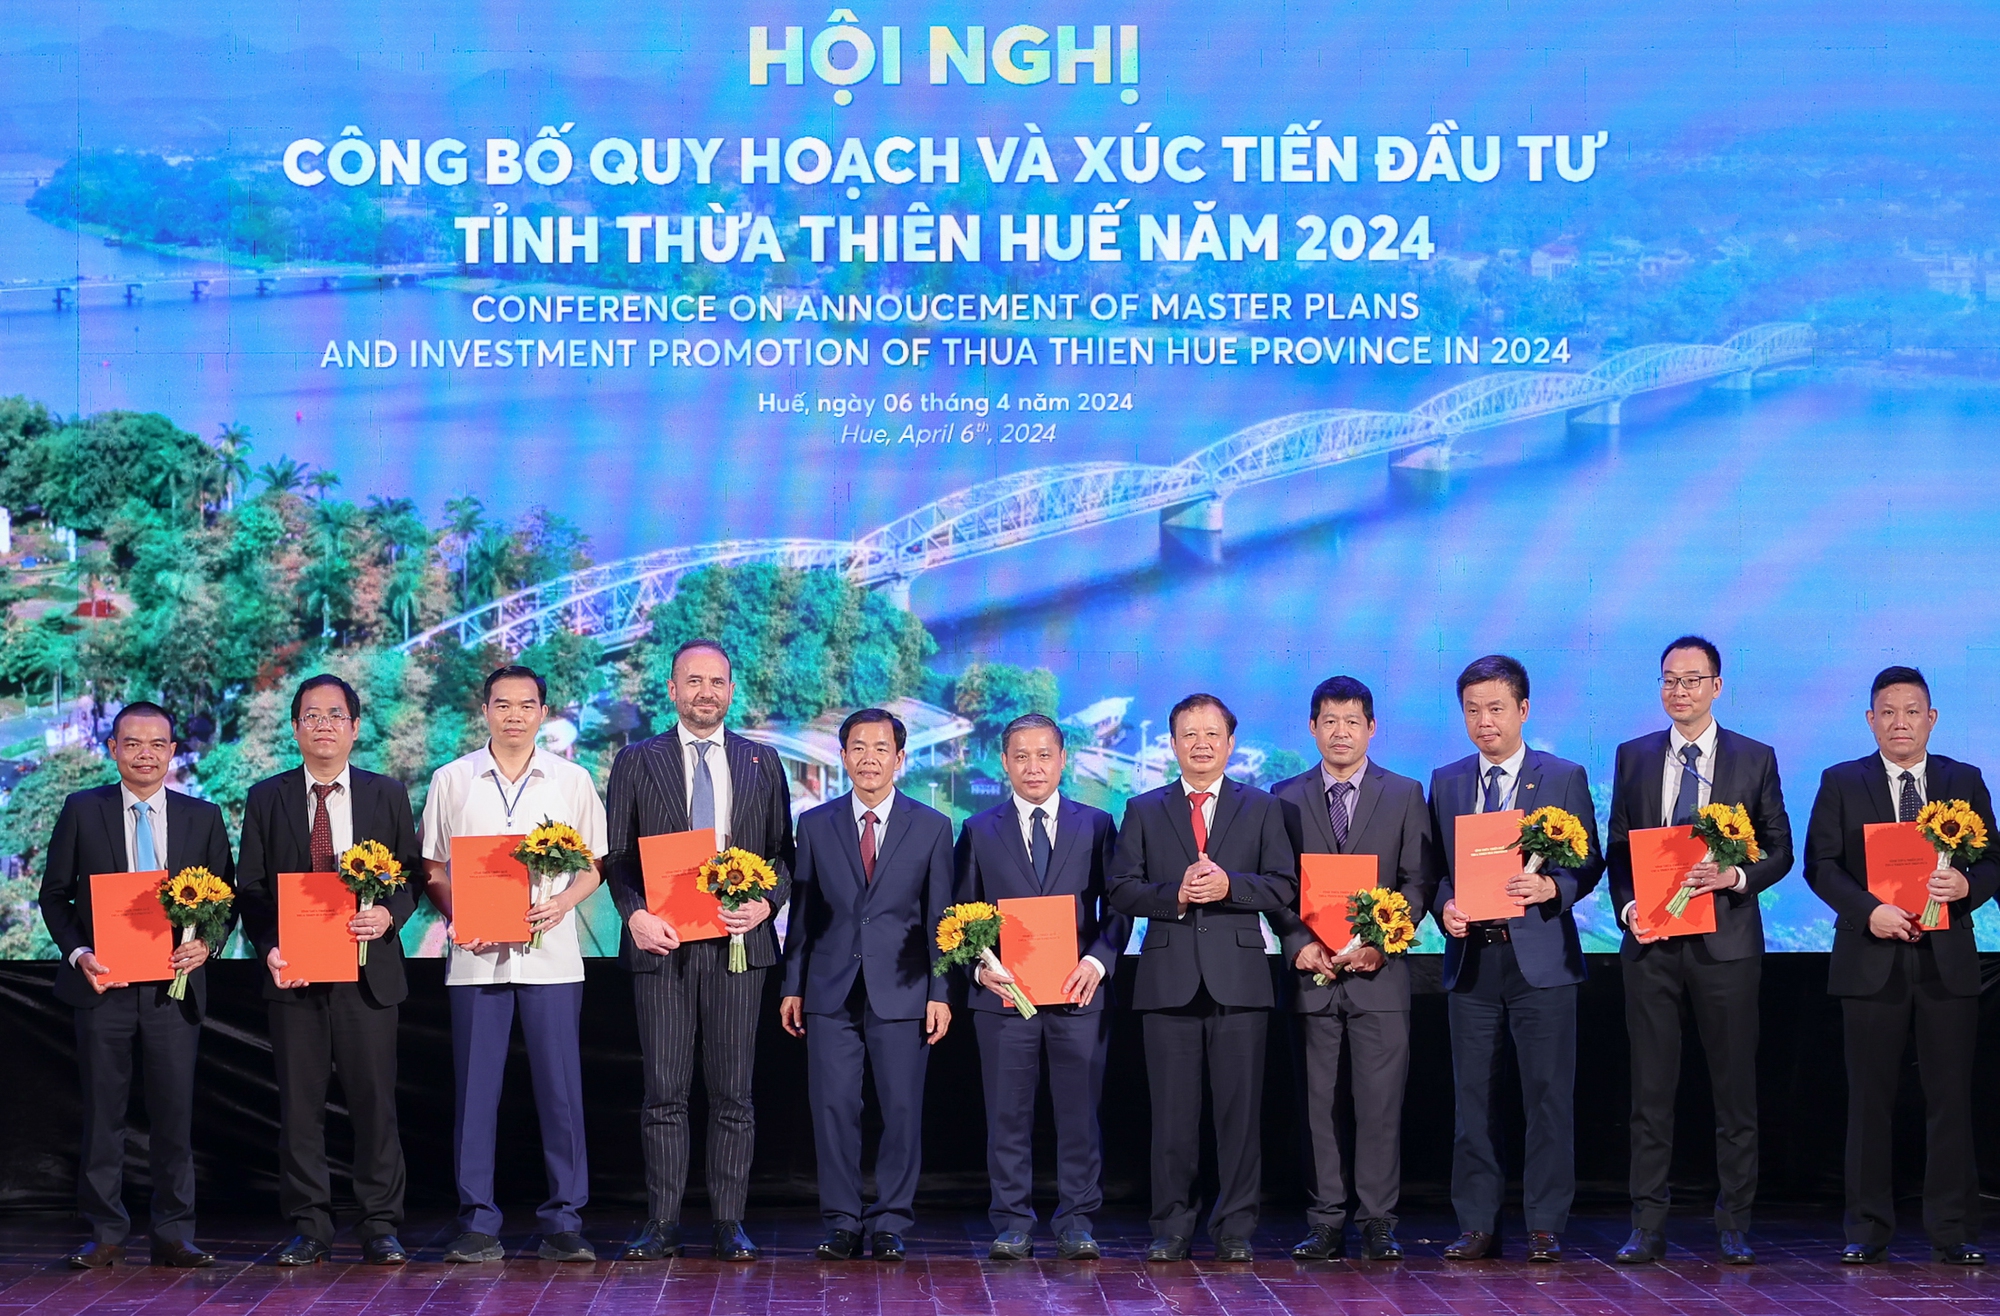 Bí thư Tỉnh ủy và Chủ tịch UBND tỉnh Thừa Thiên Huế trao giấy chứng nhận đăng ký đầu tư, quyết định chấp thuận chủ trương đầu tư, văn bản nghiên cứu cho các dự án - Ảnh: VGP/Nhật Bắc